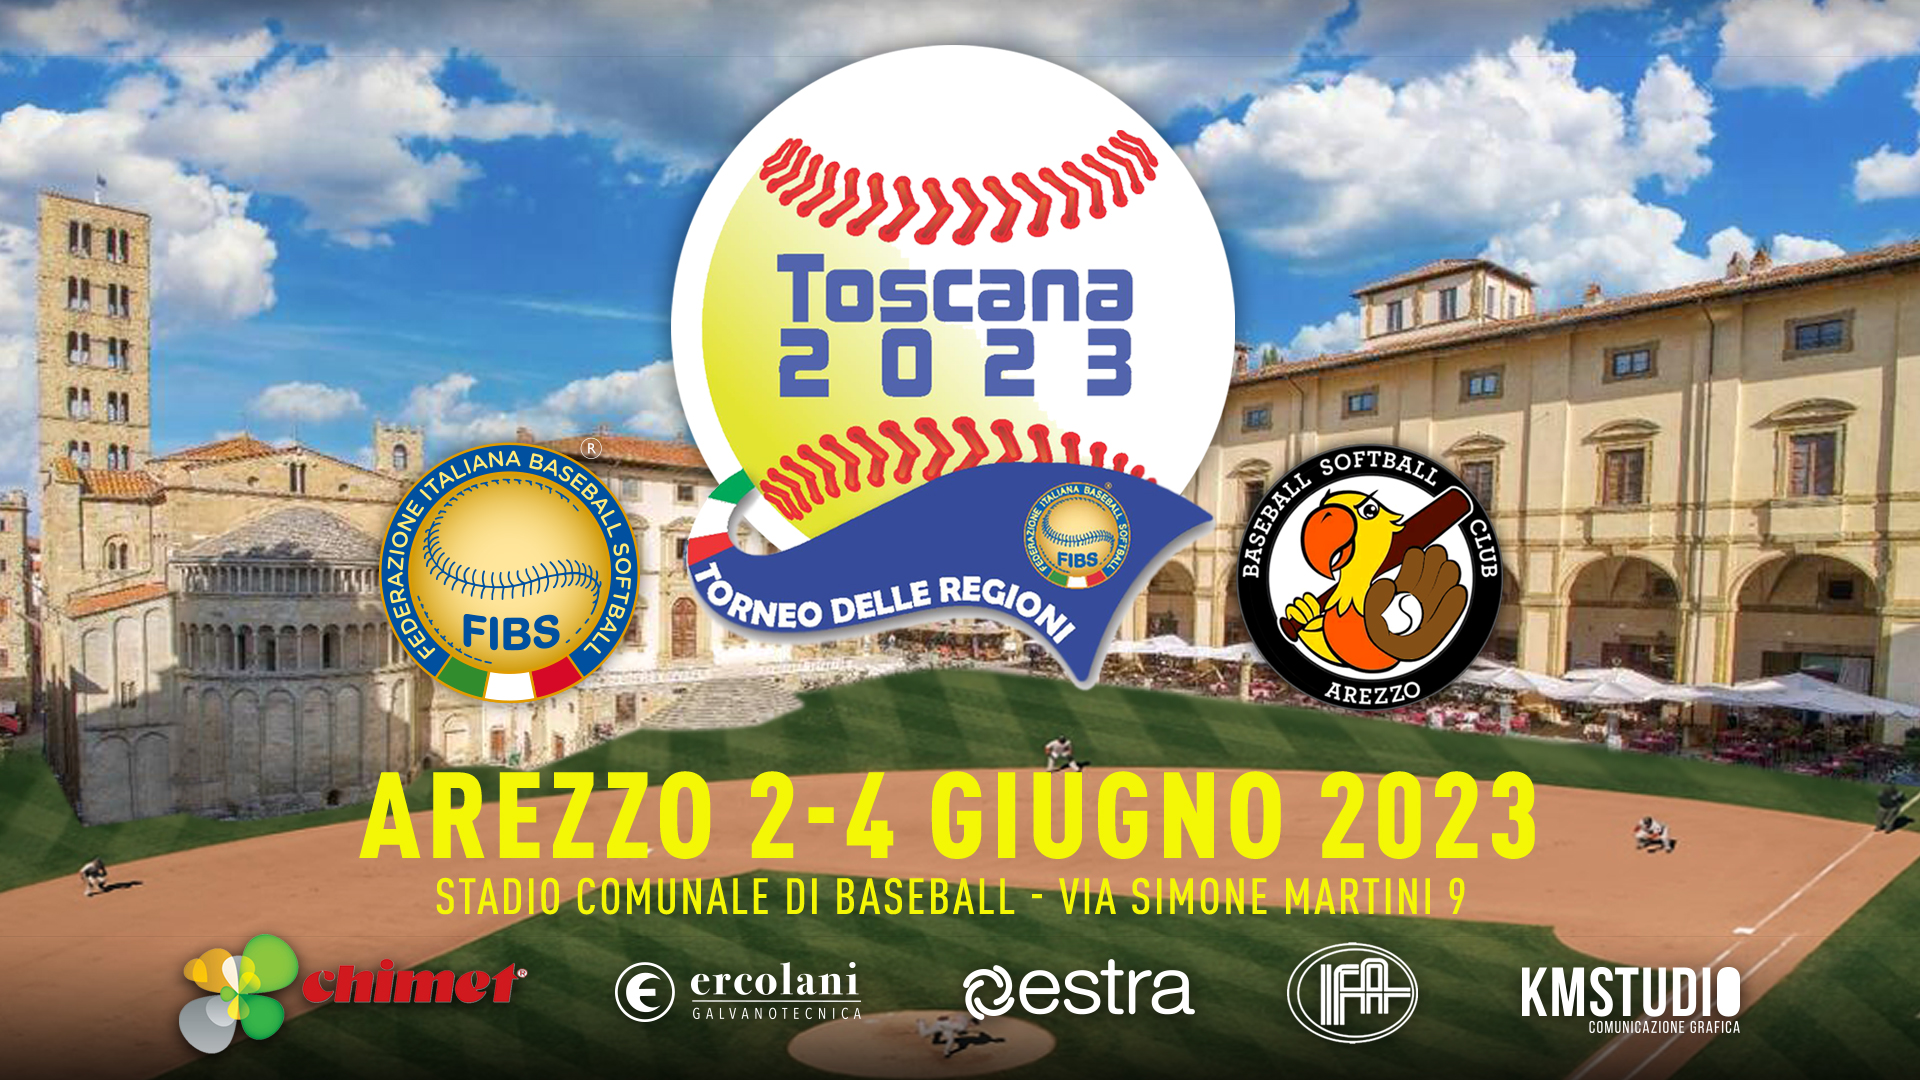 Toscana Torneo delle Regioni Baseball Arezzo 2023